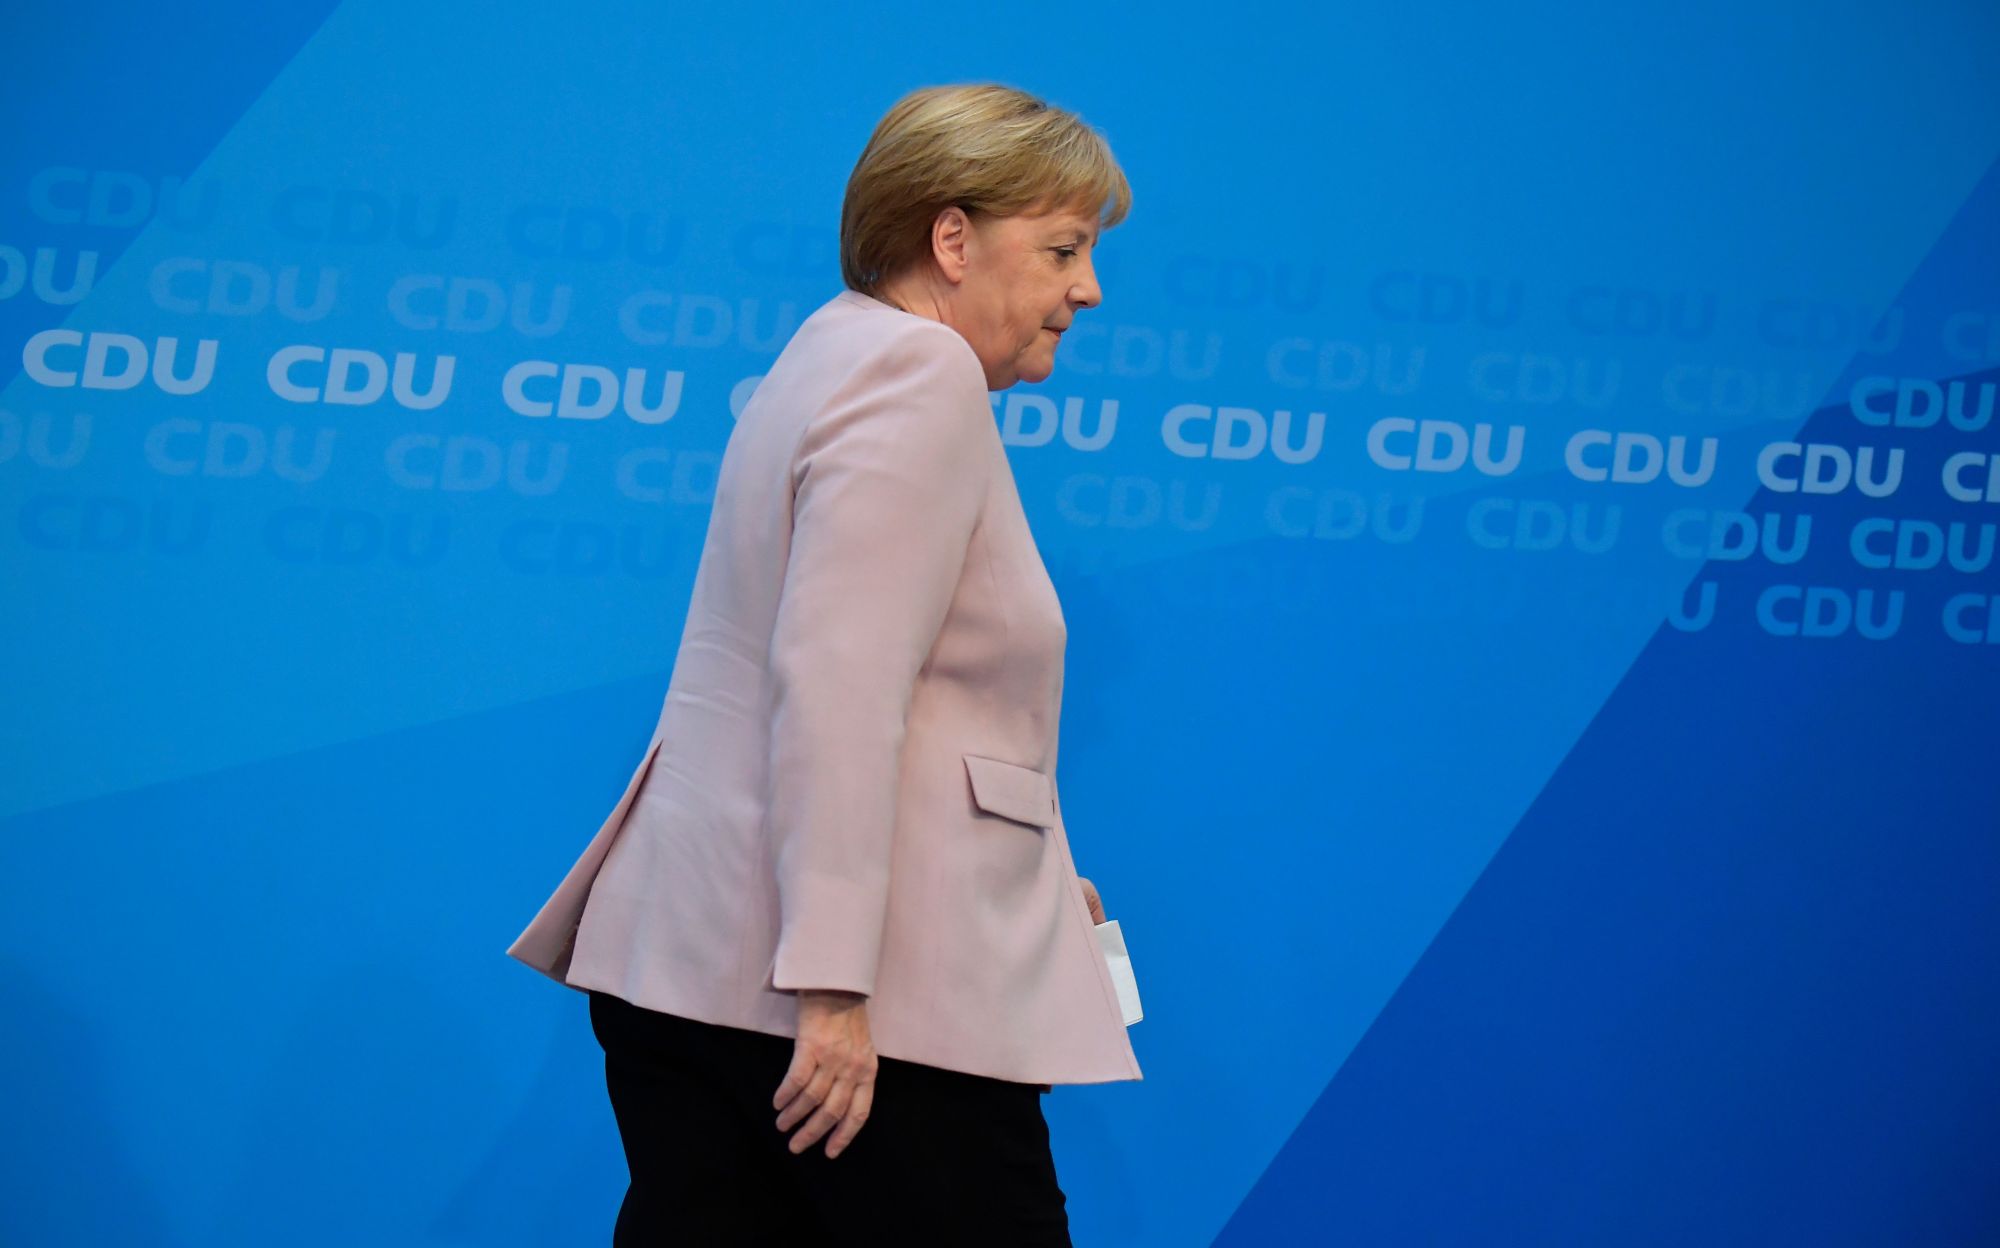 Три кандидата. Кто станет канцлером Германии после Меркель?